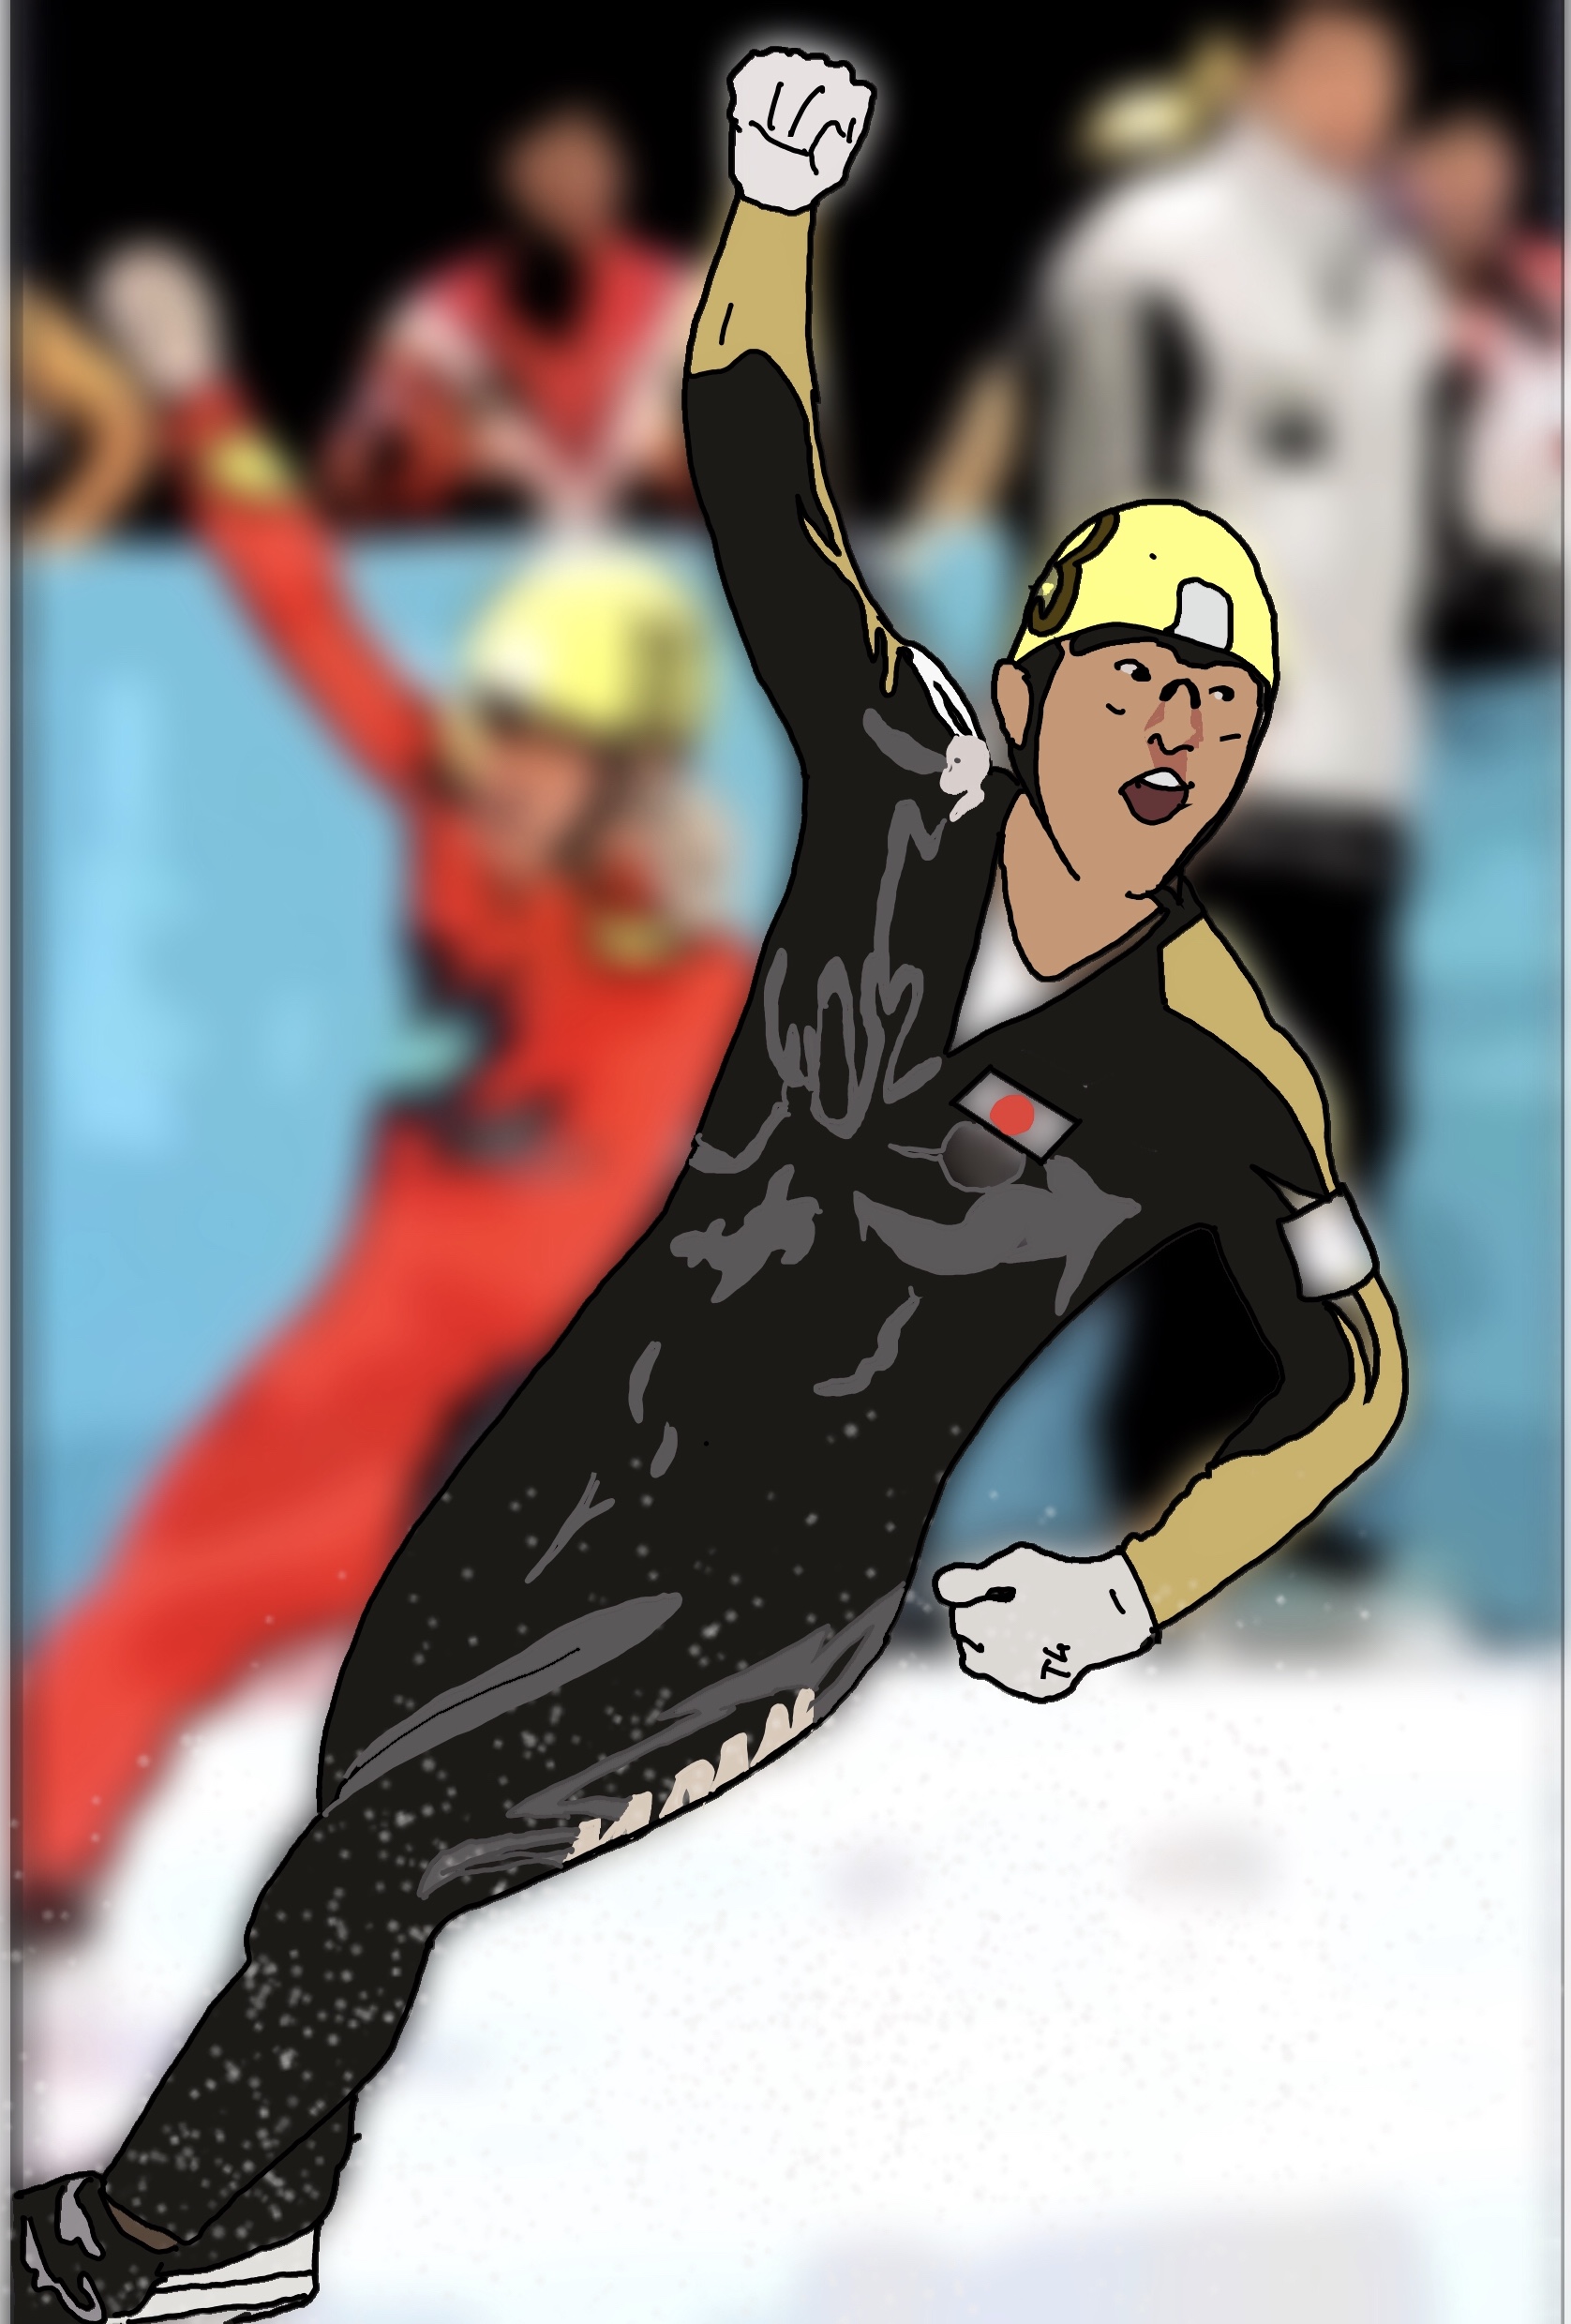 柿沢謙二ブログ 冬季オリンピック 日本の獲得した金メダル